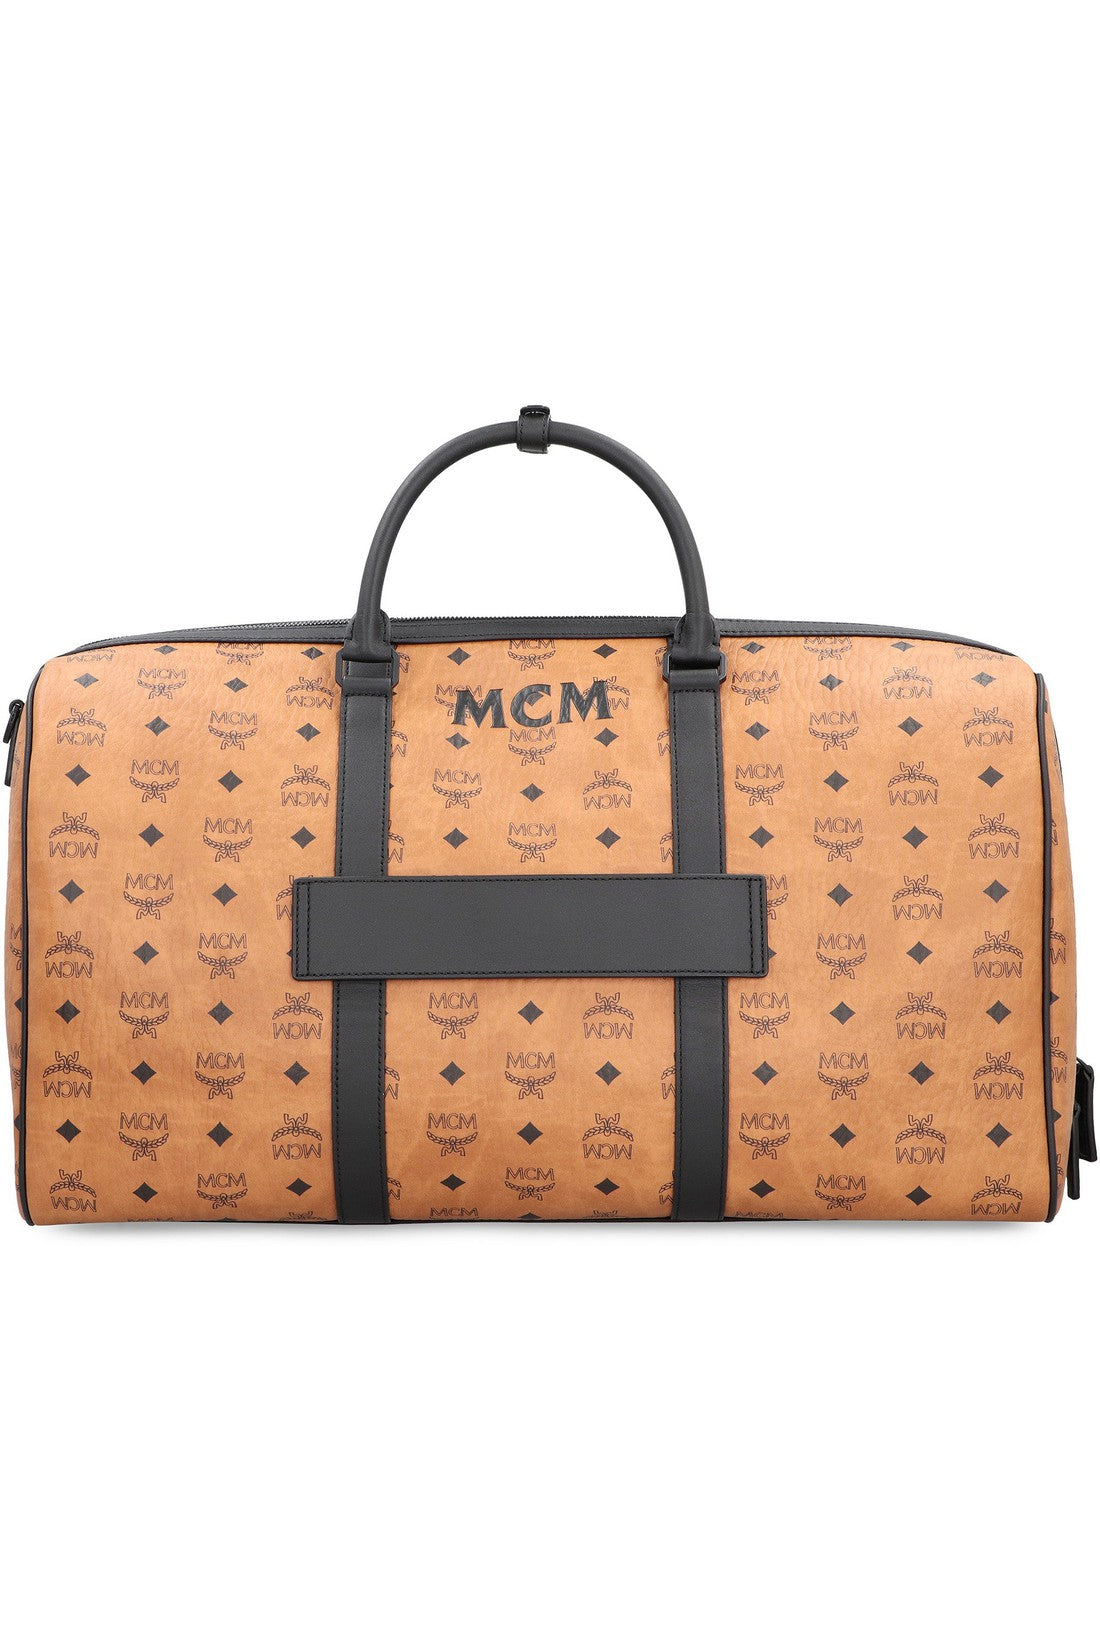 MCM-OUTLET-SALE-Ottomar Weekender travel bag-ARCHIVIST